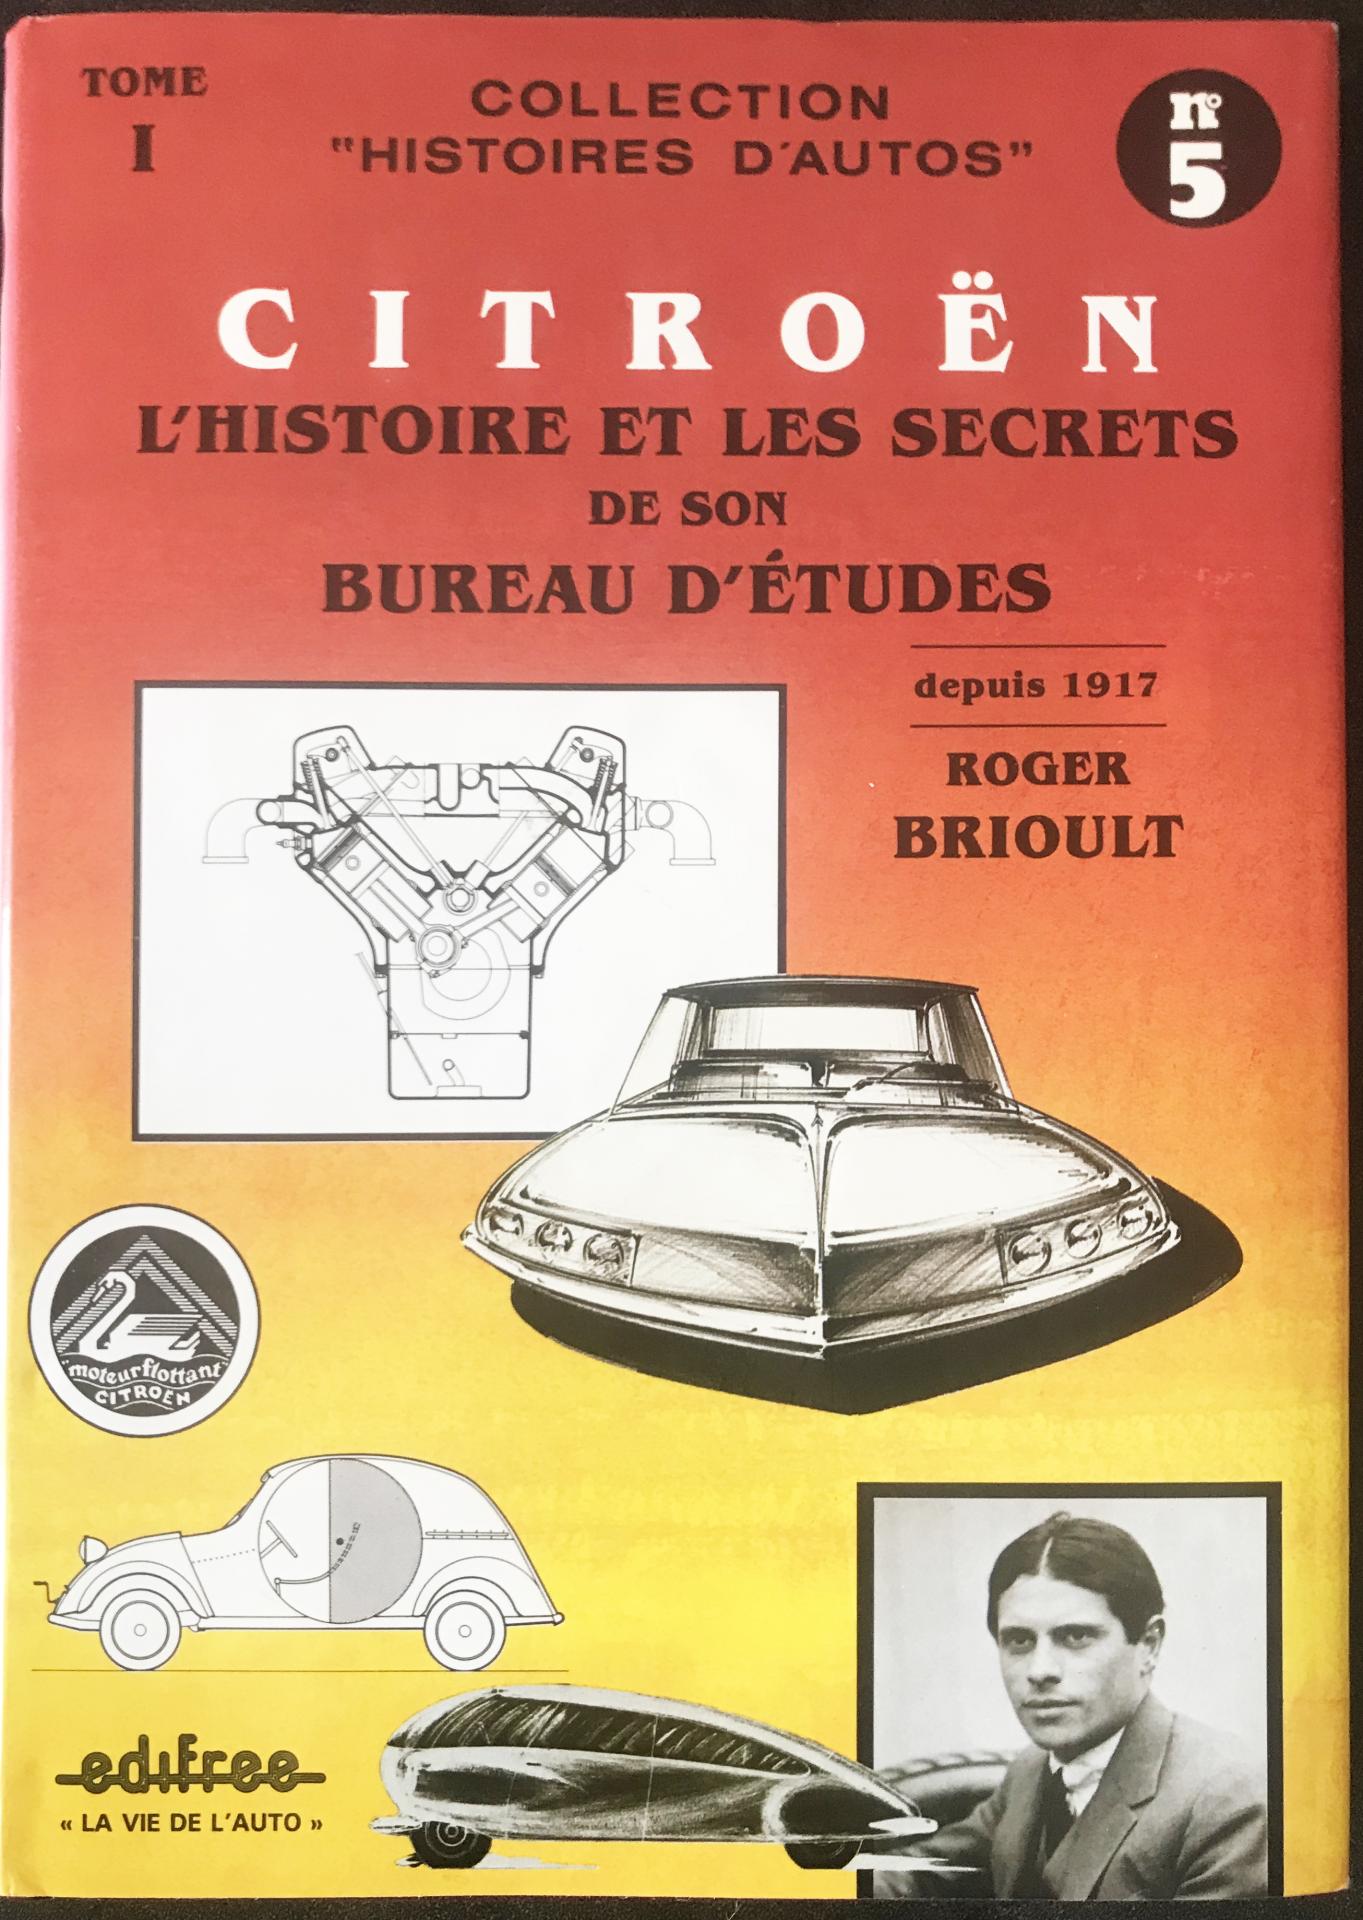 1987 Citroën L'Histoire et les secrets de son bureau d'études tome 1